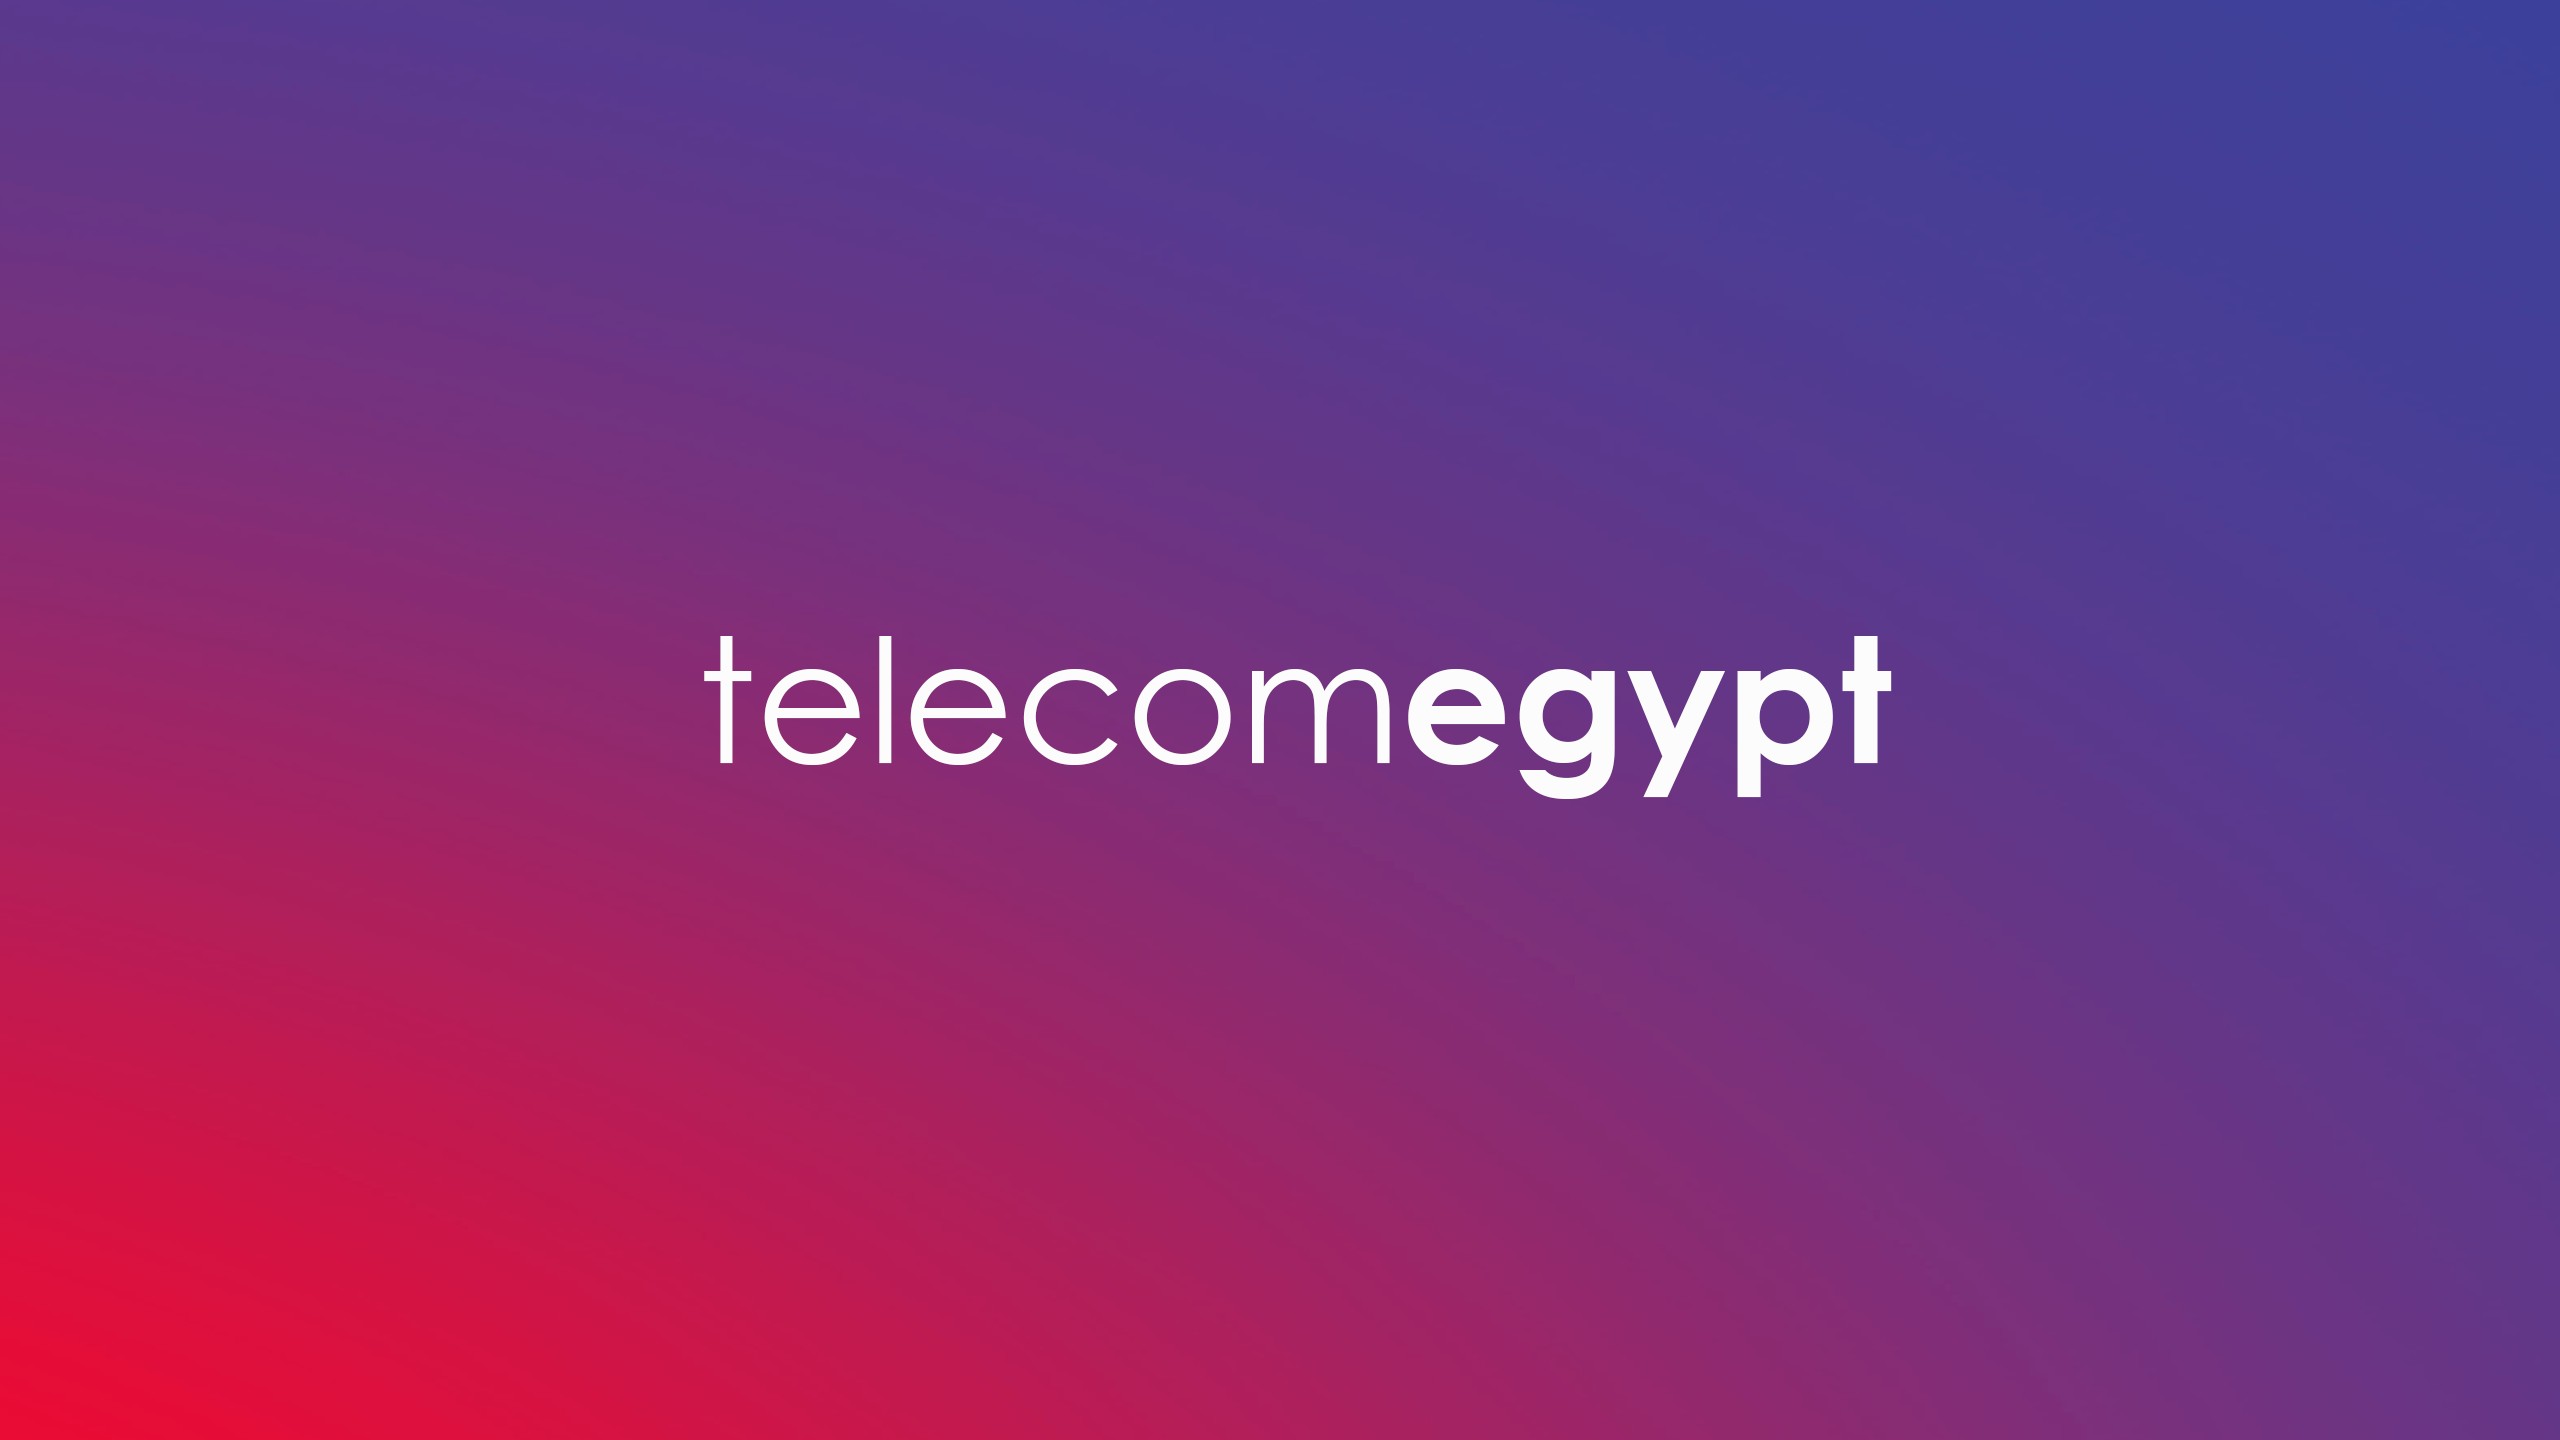 Telecom Egypt | LinkedIn